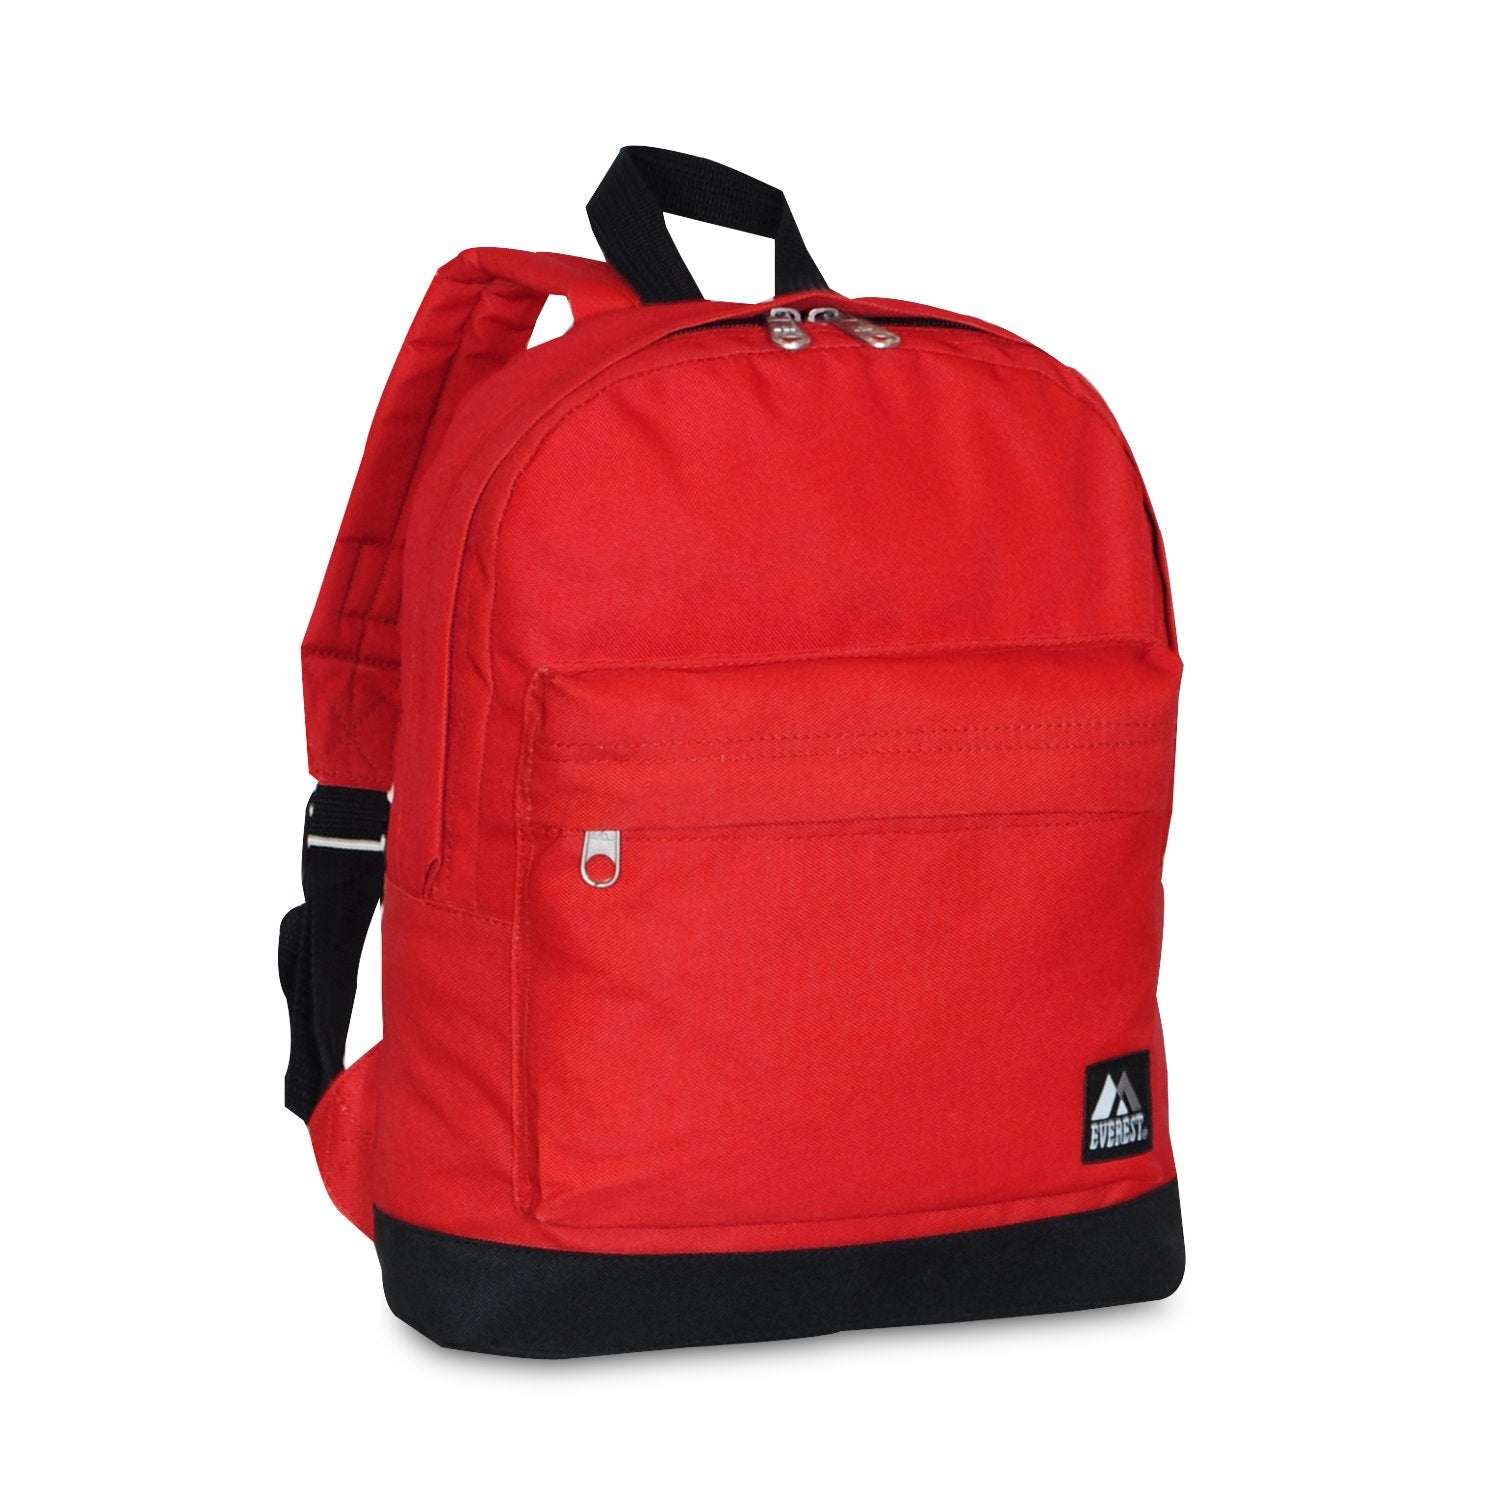 Everest 025-OG/BK Sporty Gear Bag-Large, Orange, One Size